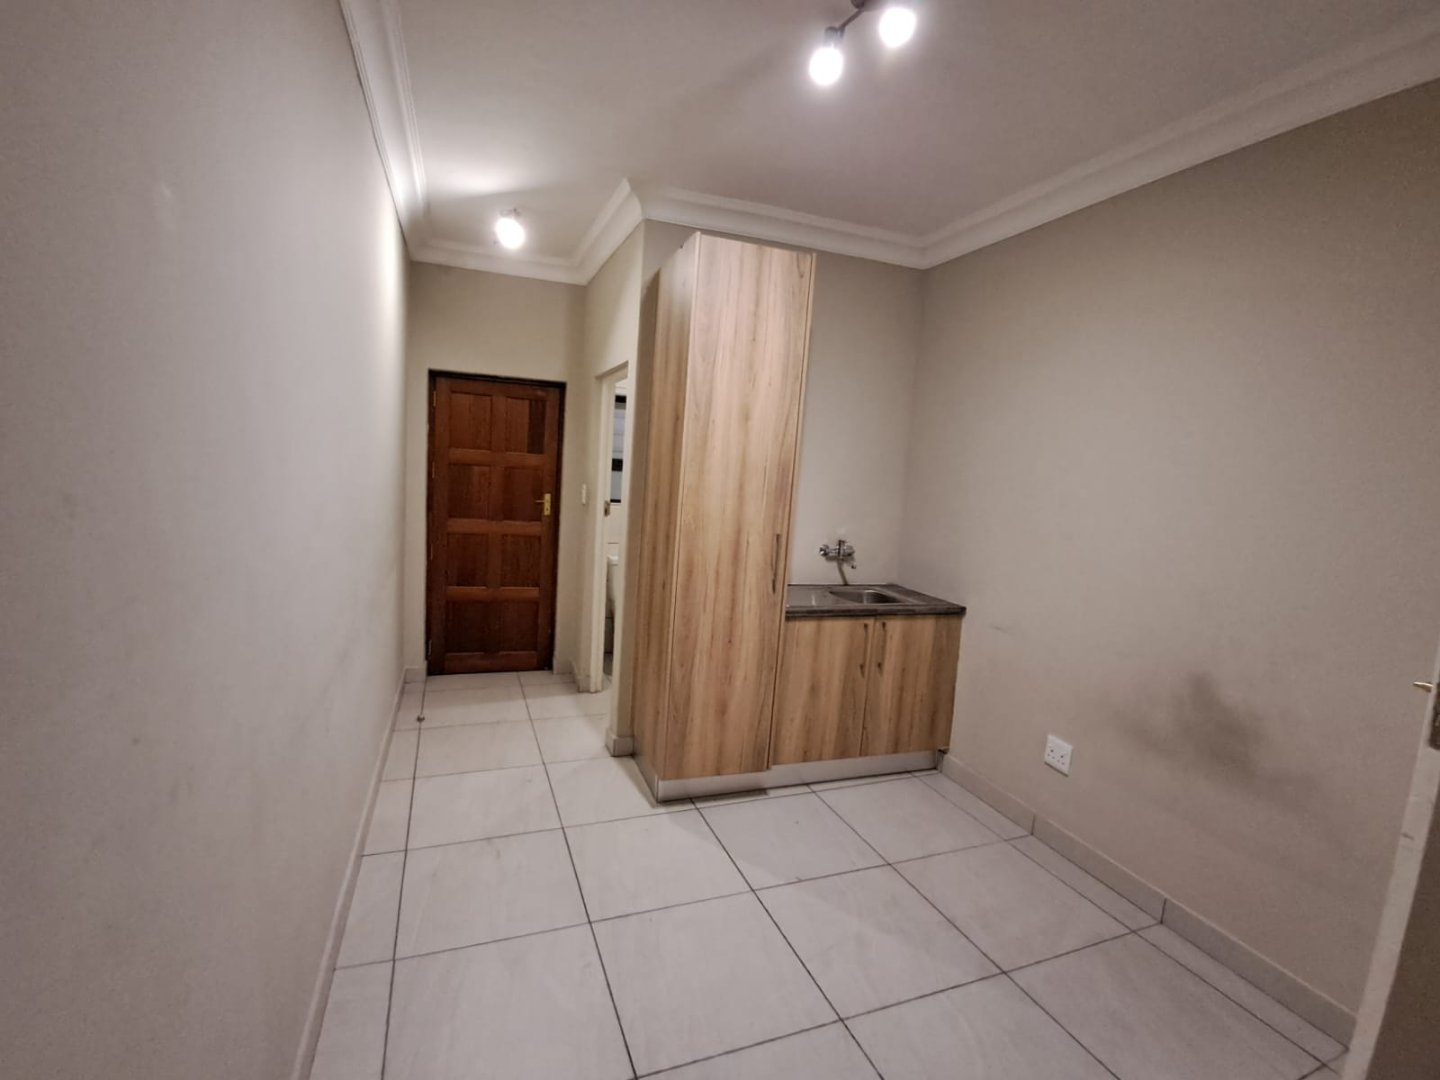 To Let 3 Bedroom Property for Rent in Linksfield Gauteng